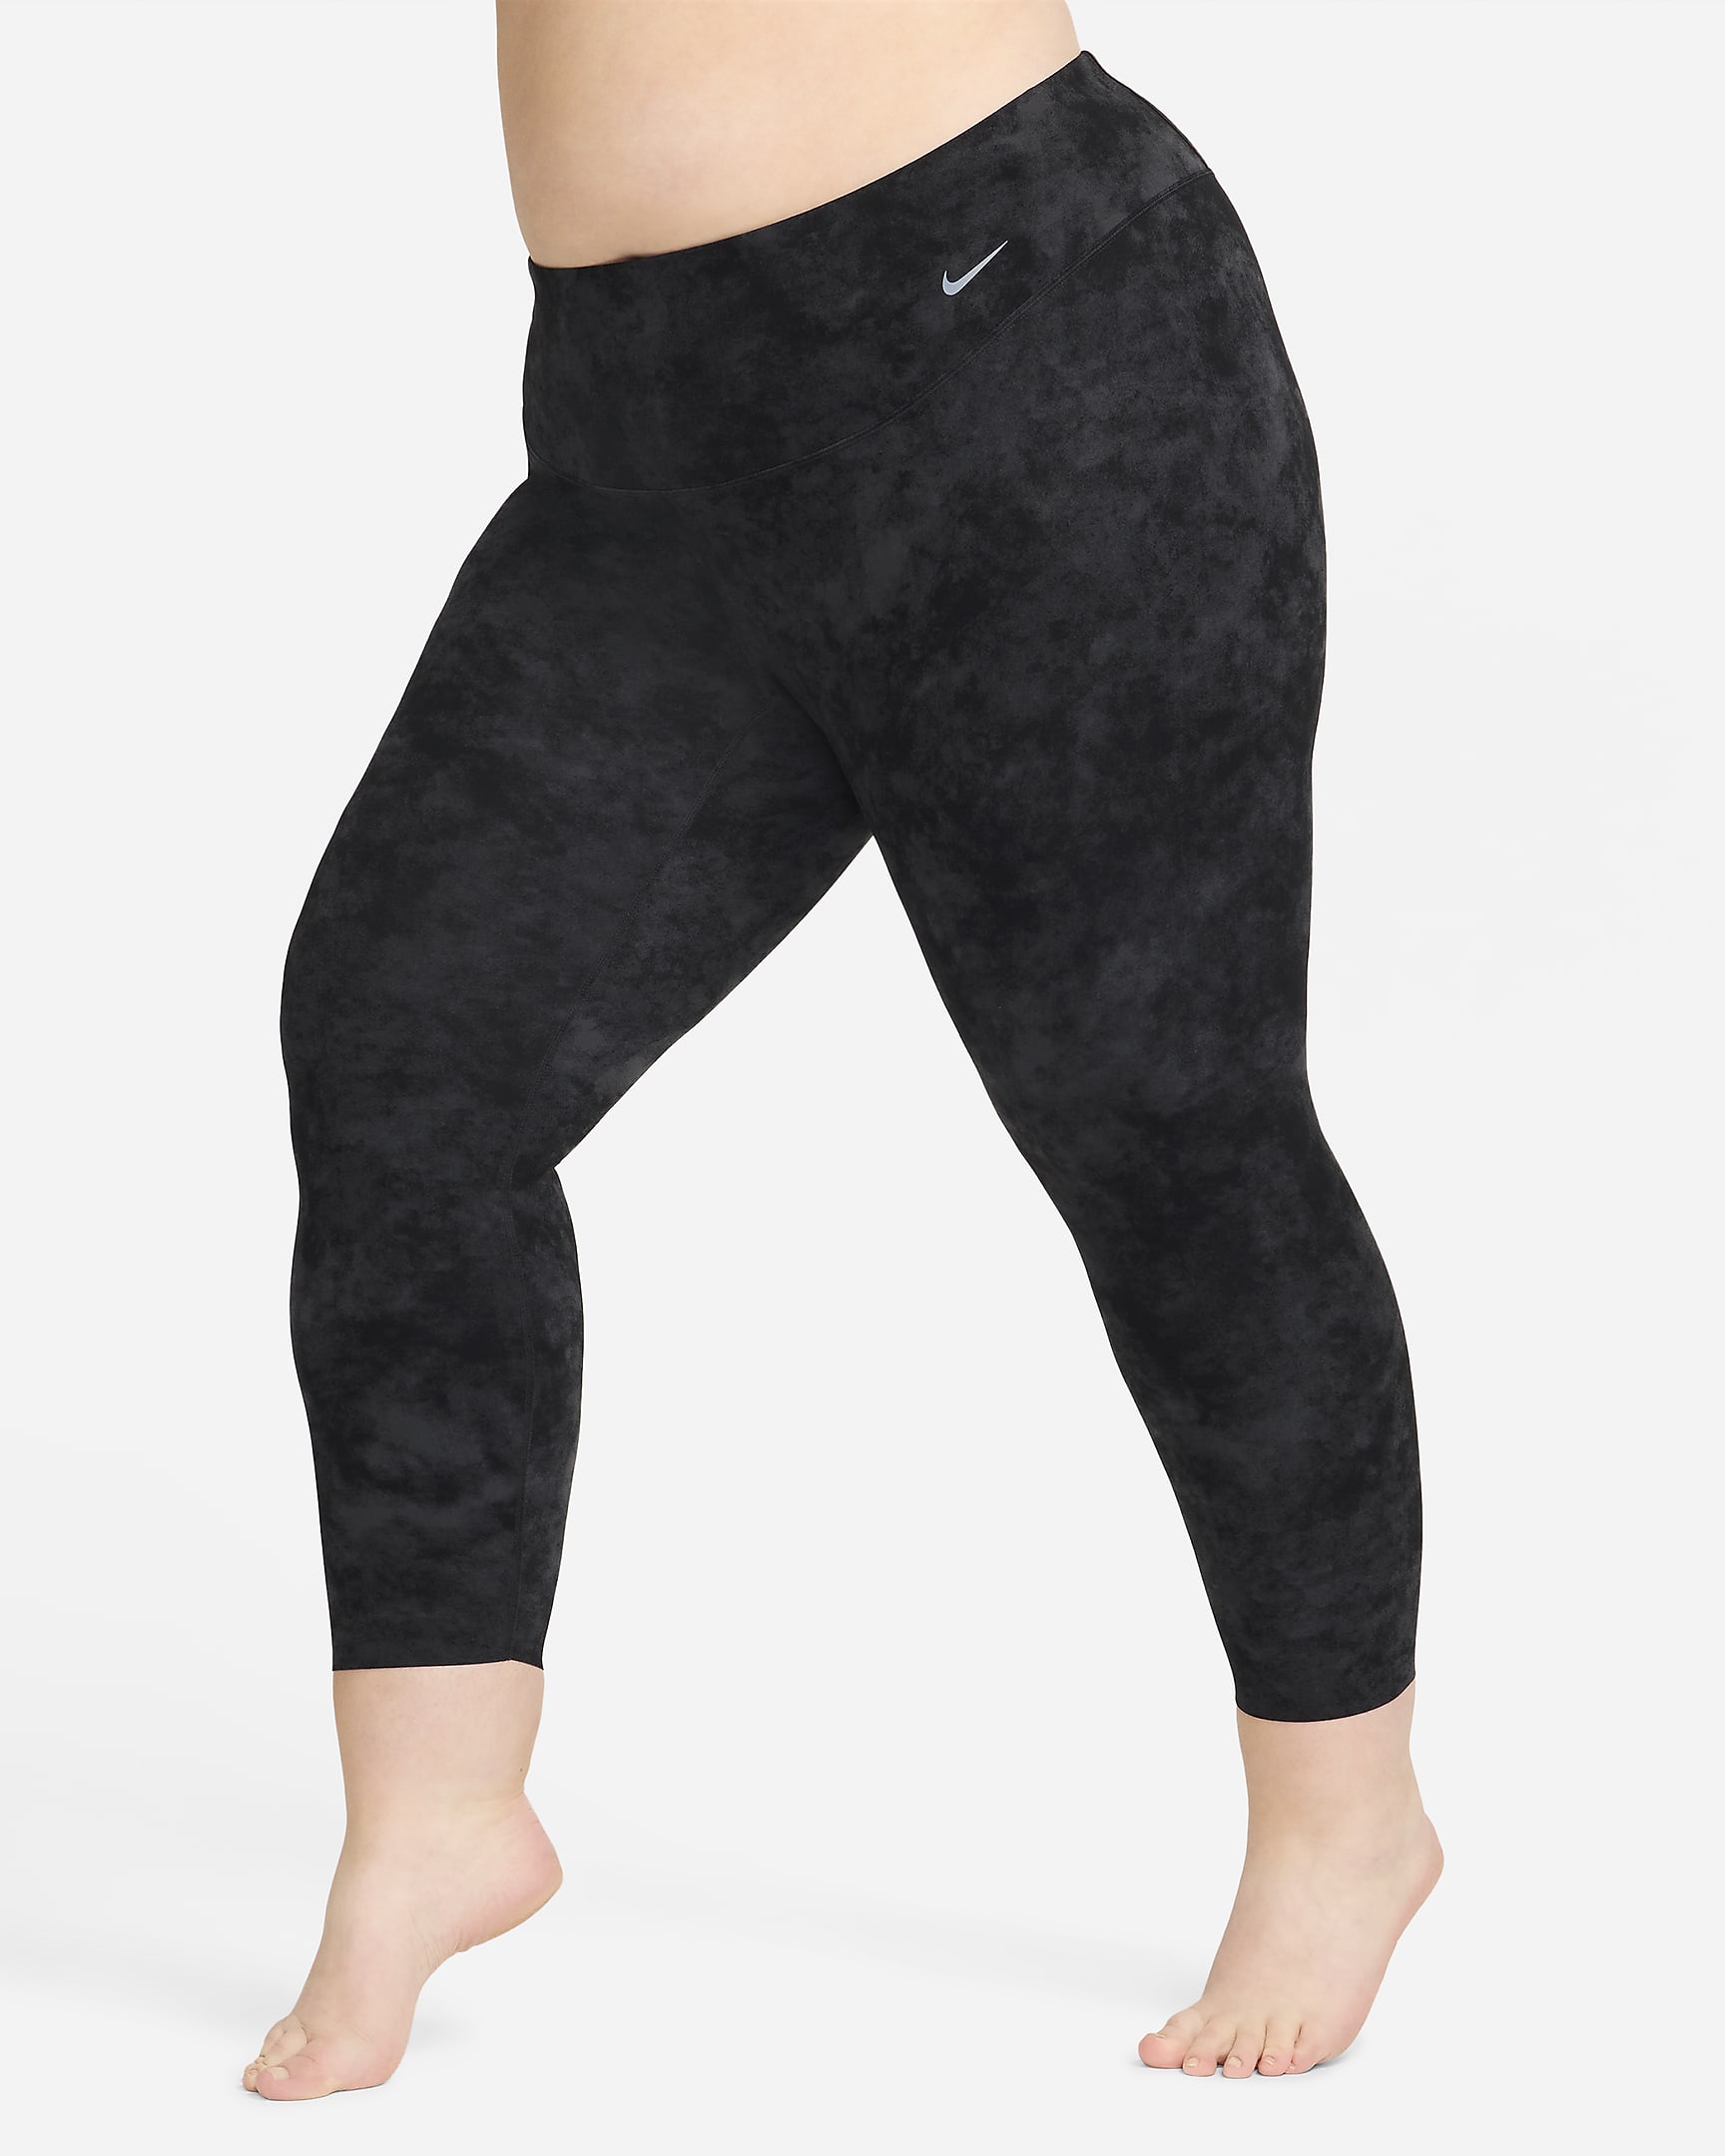 Nike Zenvy Tie-Dye Women's Gentle-Support High-Waisted 7/8 Leggings (Plus Size) - Black/Black